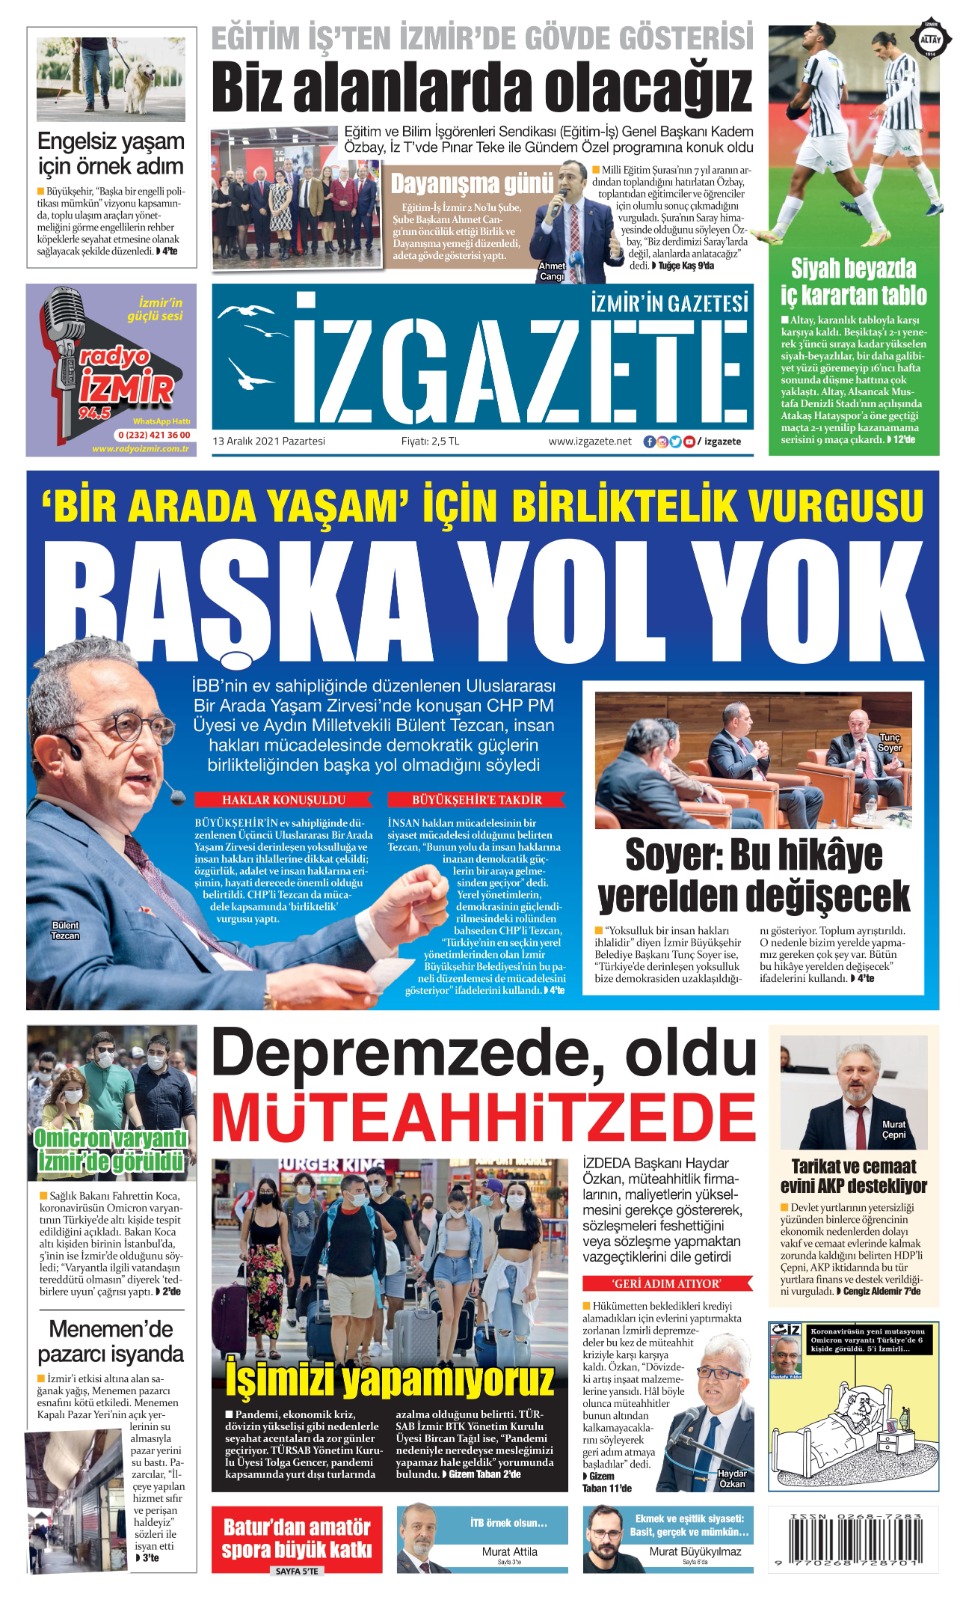 İz Gazete - İzmir'in Gazetesi - 13.12.2021 Manşeti